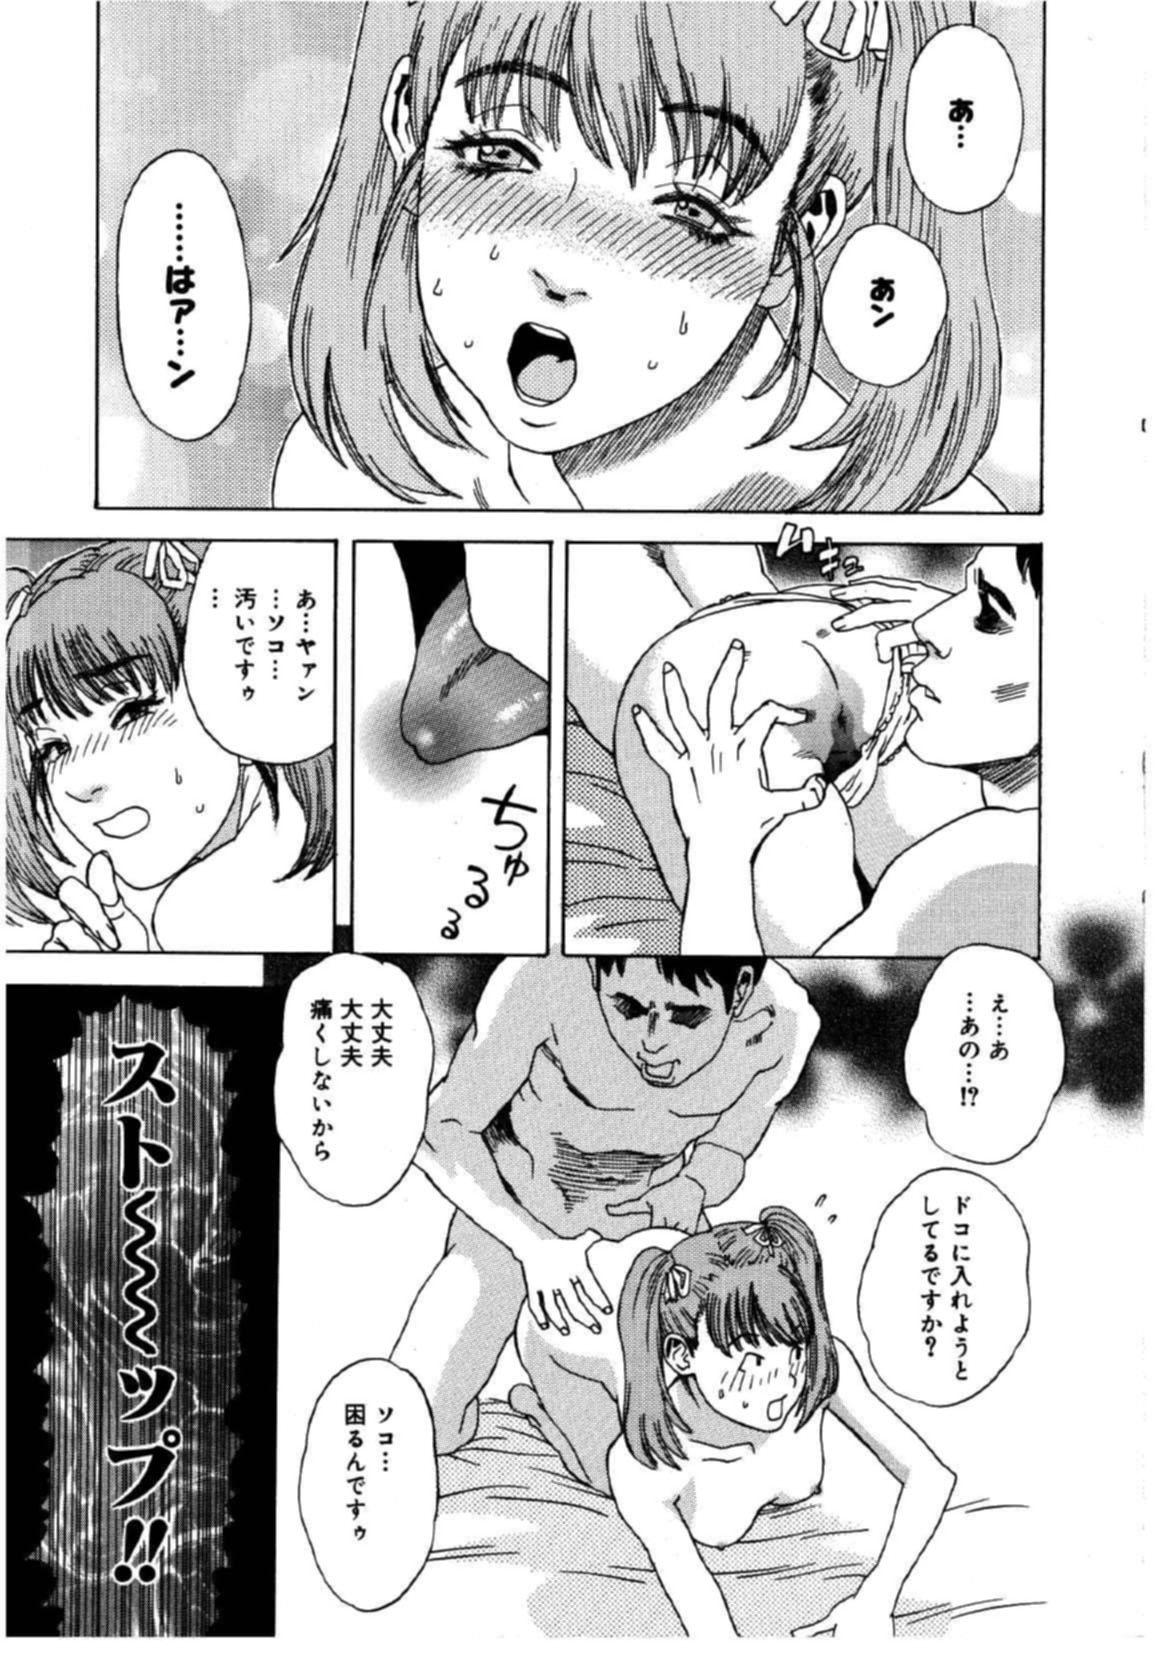 Masturbando Hime go Yomi - Princess Calendar Pregnant - Page 7